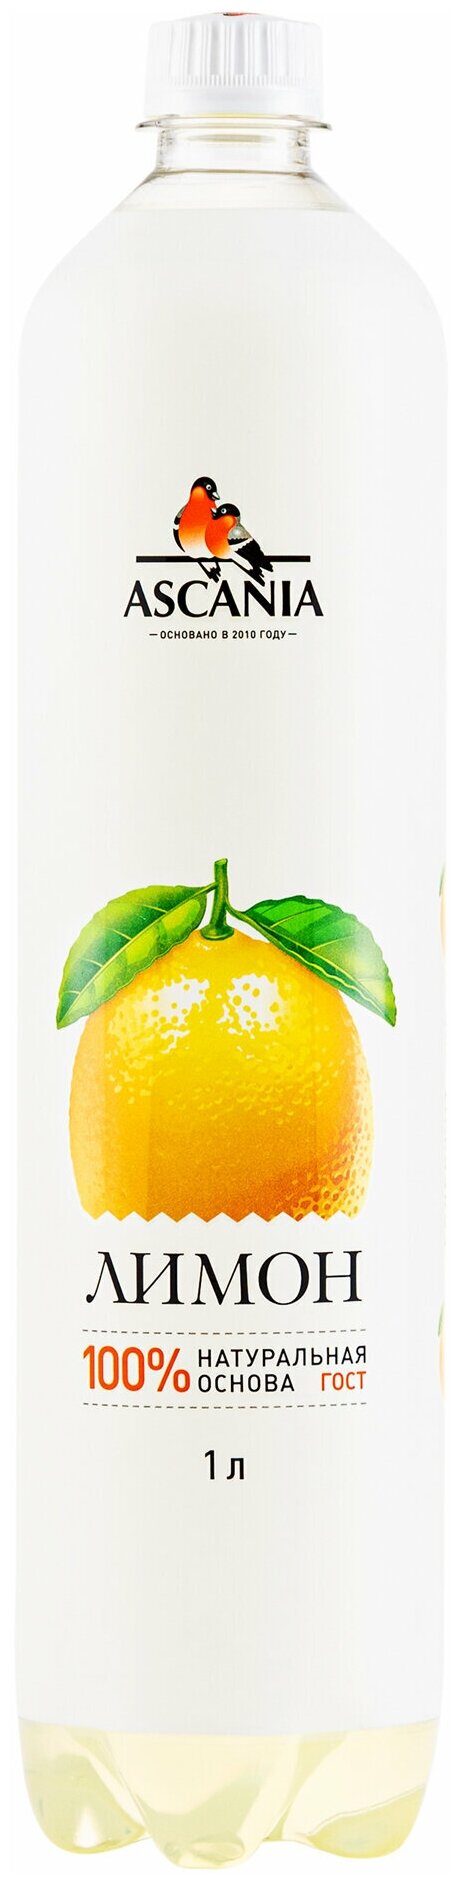 Напиток газированный Ascania (Аскания) Лимон 1,0 л х 6 бутылок, пэт - фотография № 3